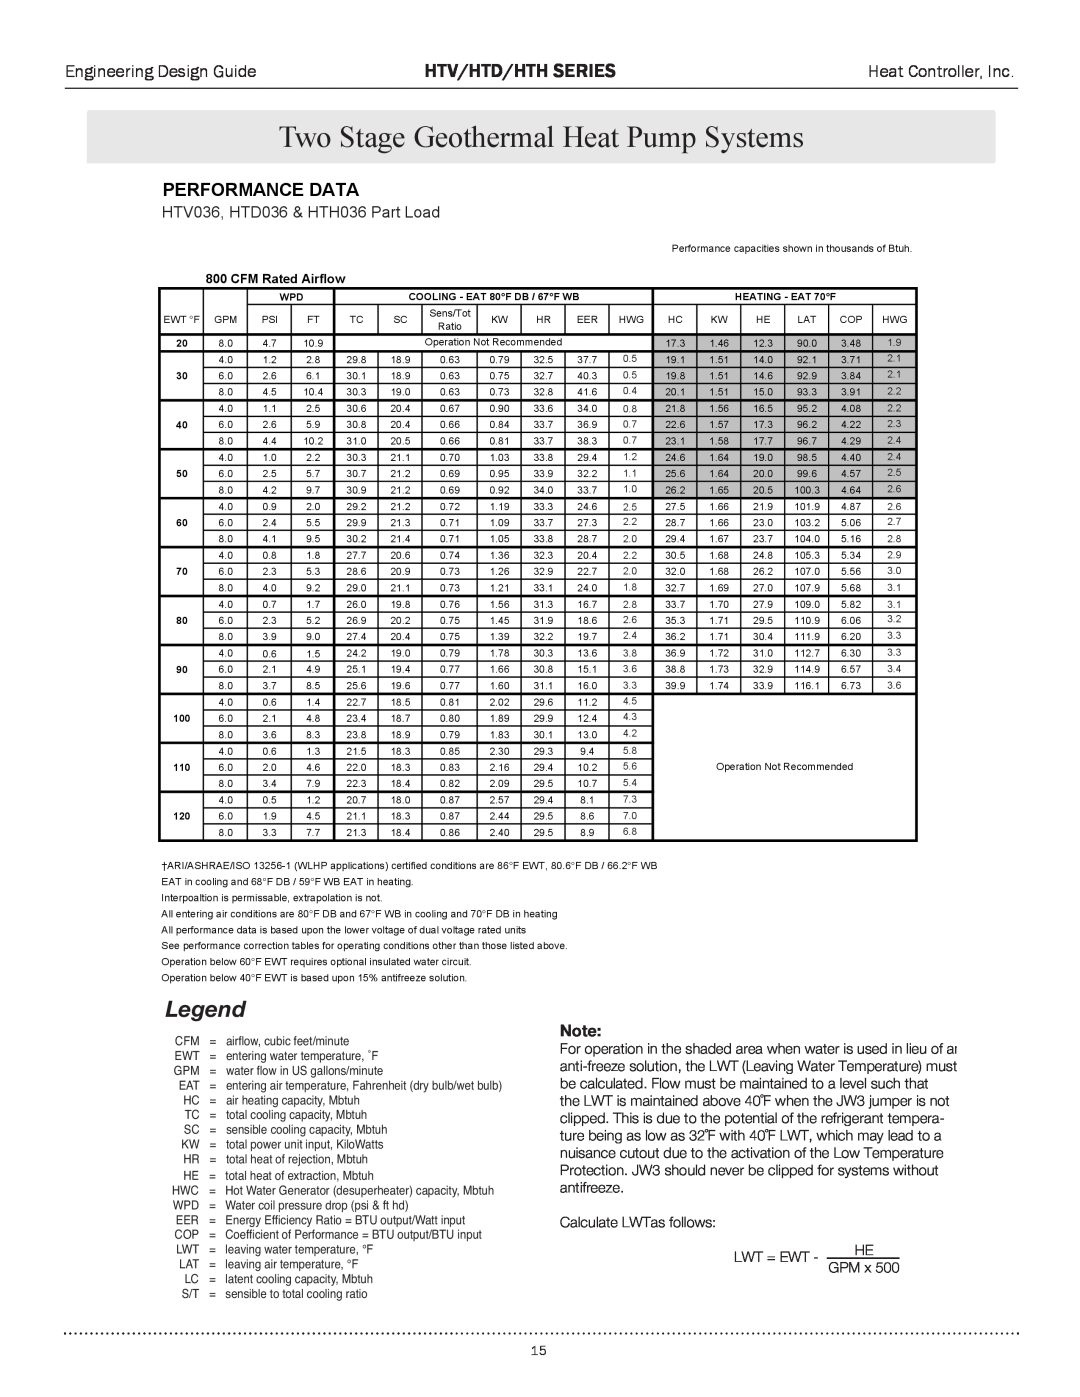 Heat Controller HTH SERIES manual HTV036,/6äÎÈÊ*>ÀÌÊ&HTD036œPart>`Load, Egend, Htv/Htd/Hth Series, Performance Data, œÌi 